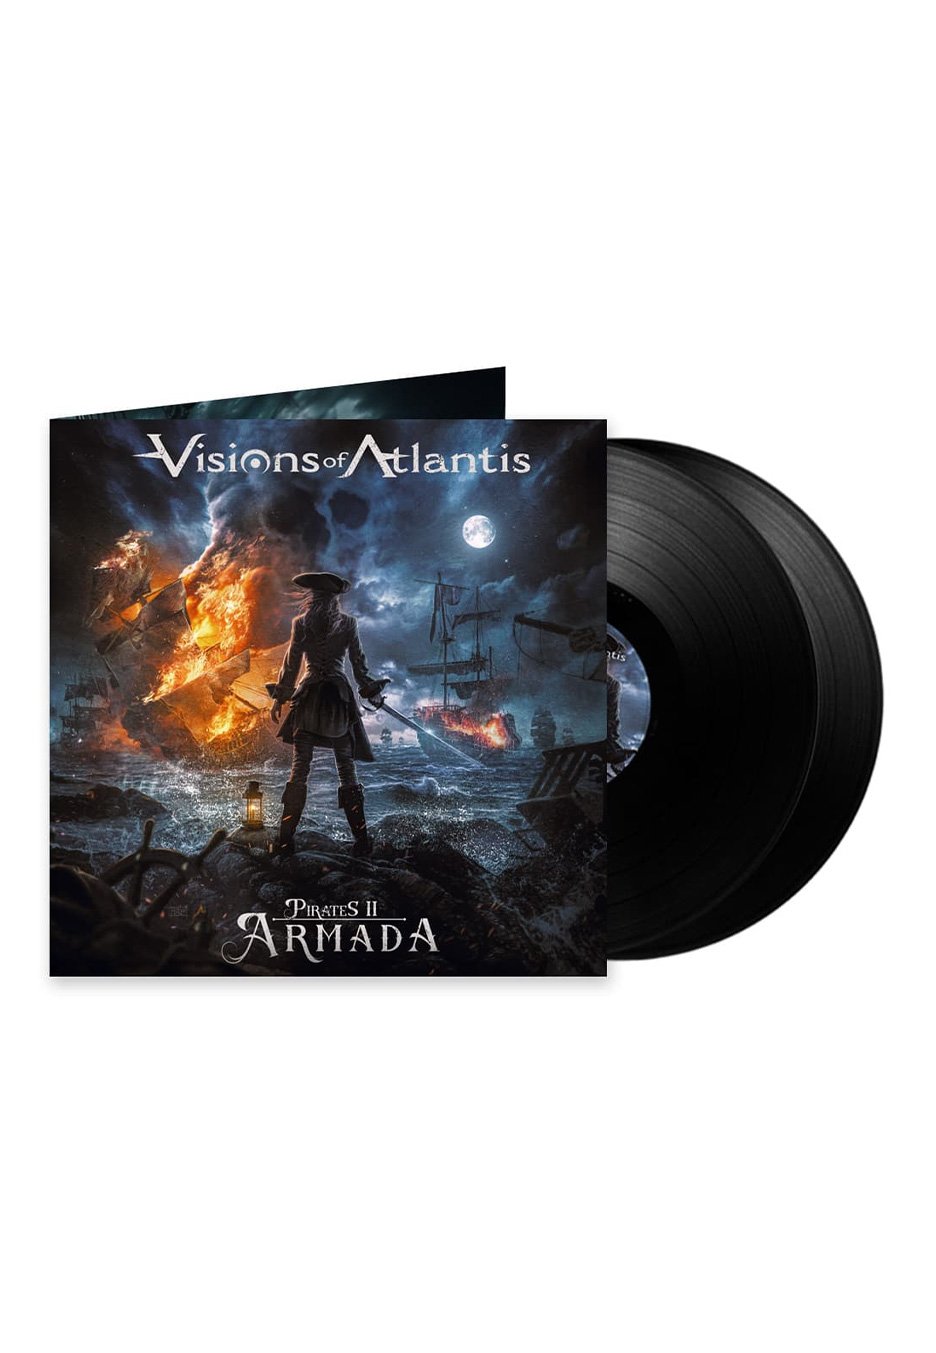 Visions Of Atlantis - Pirates II: Armada - 2 Vinyl